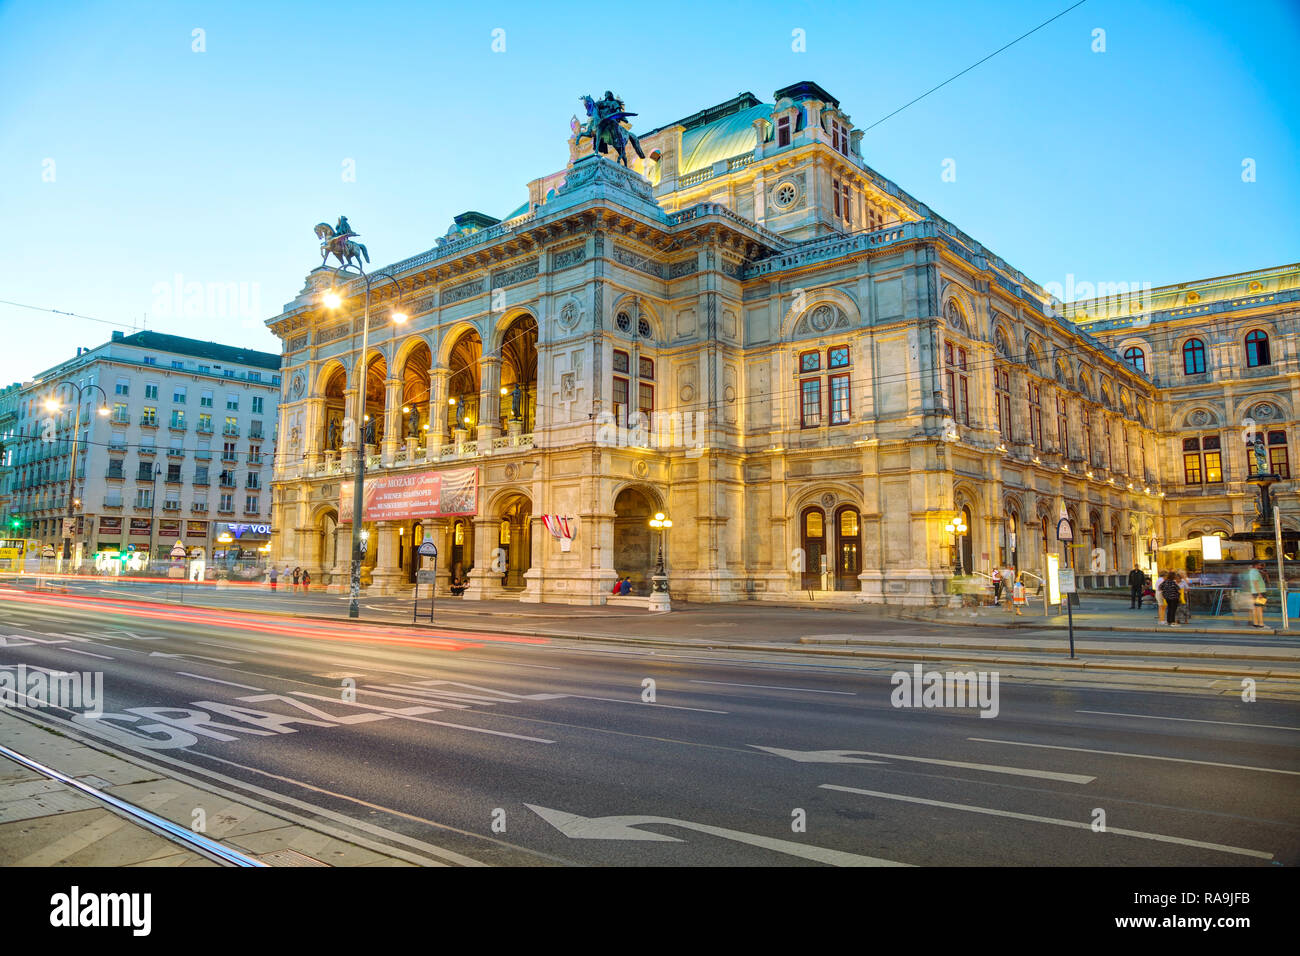 VIENNA - 30 agosto: Opera di Stato di Vienna di notte il 30 agosto 2017 a Vienna. Si tratta di un opera house - e opera company - con una storia che risale a Foto Stock